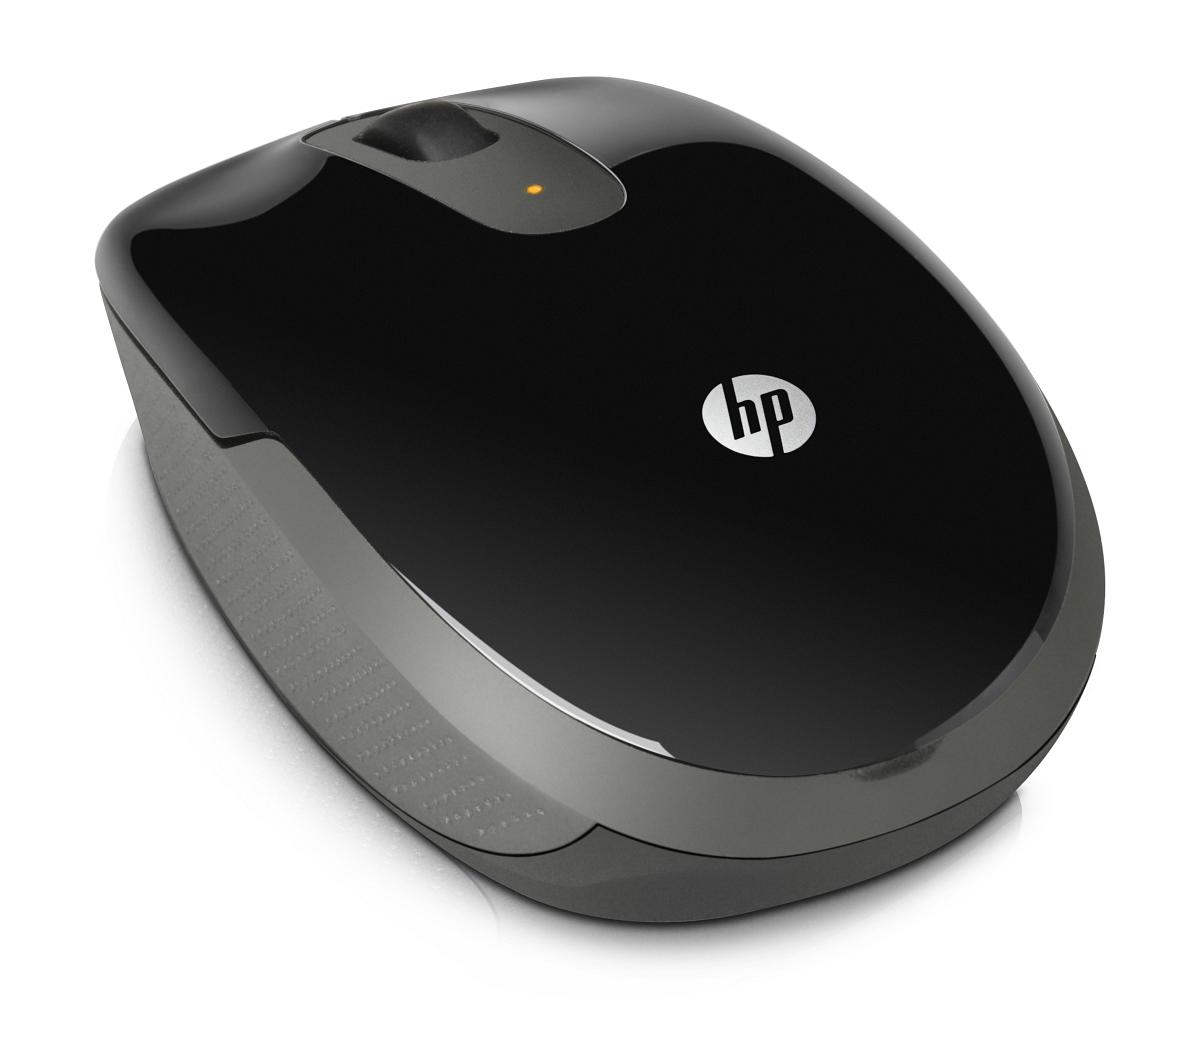 Bezdrátová myš HP (LB454AA)